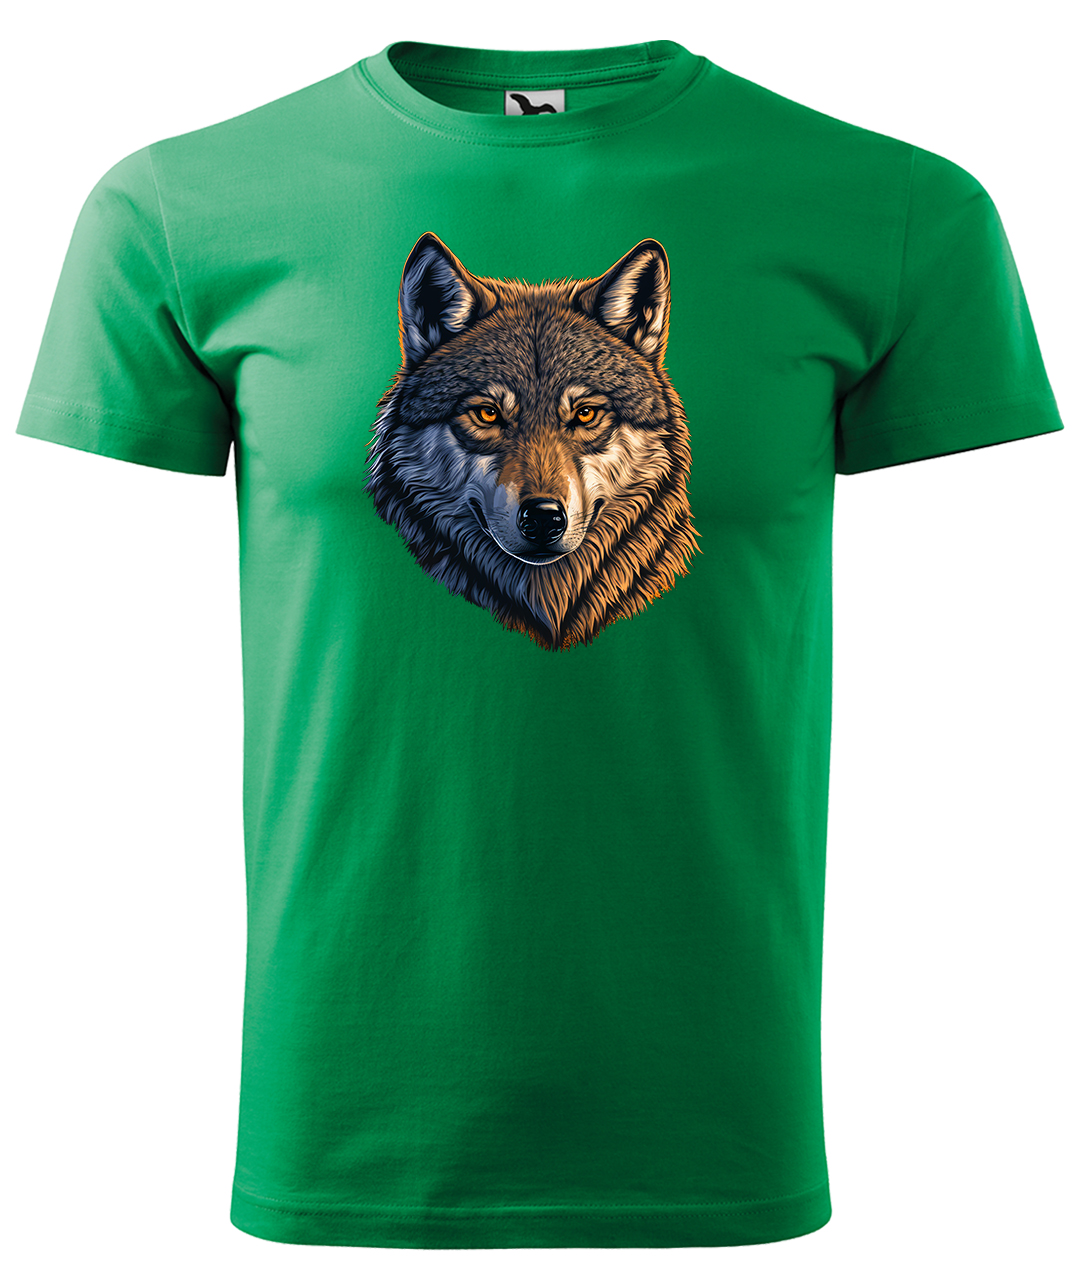 Dětské tričko s vlkem - Hlava vlka Velikost: 10 let / 146 cm, Barva: Středně zelená (16), Délka rukávu: Krátký rukáv